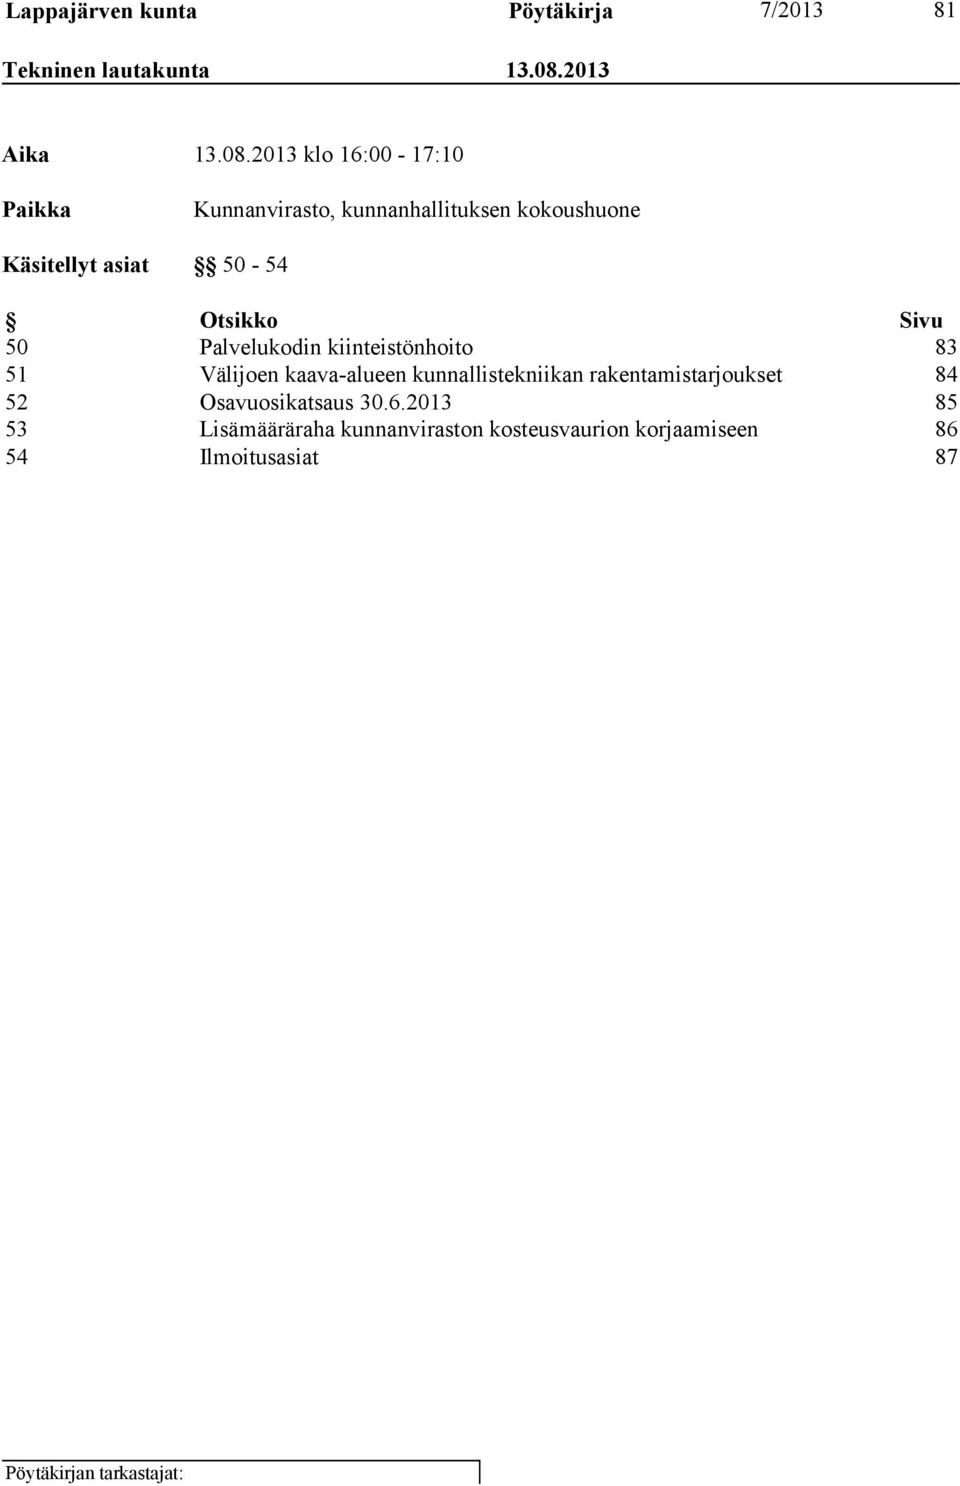 2013 klo 16:00-17:10 Paikka Kunnanvirasto, kunnanhallituksen kokoushuone Käsitellyt asiat 50-54